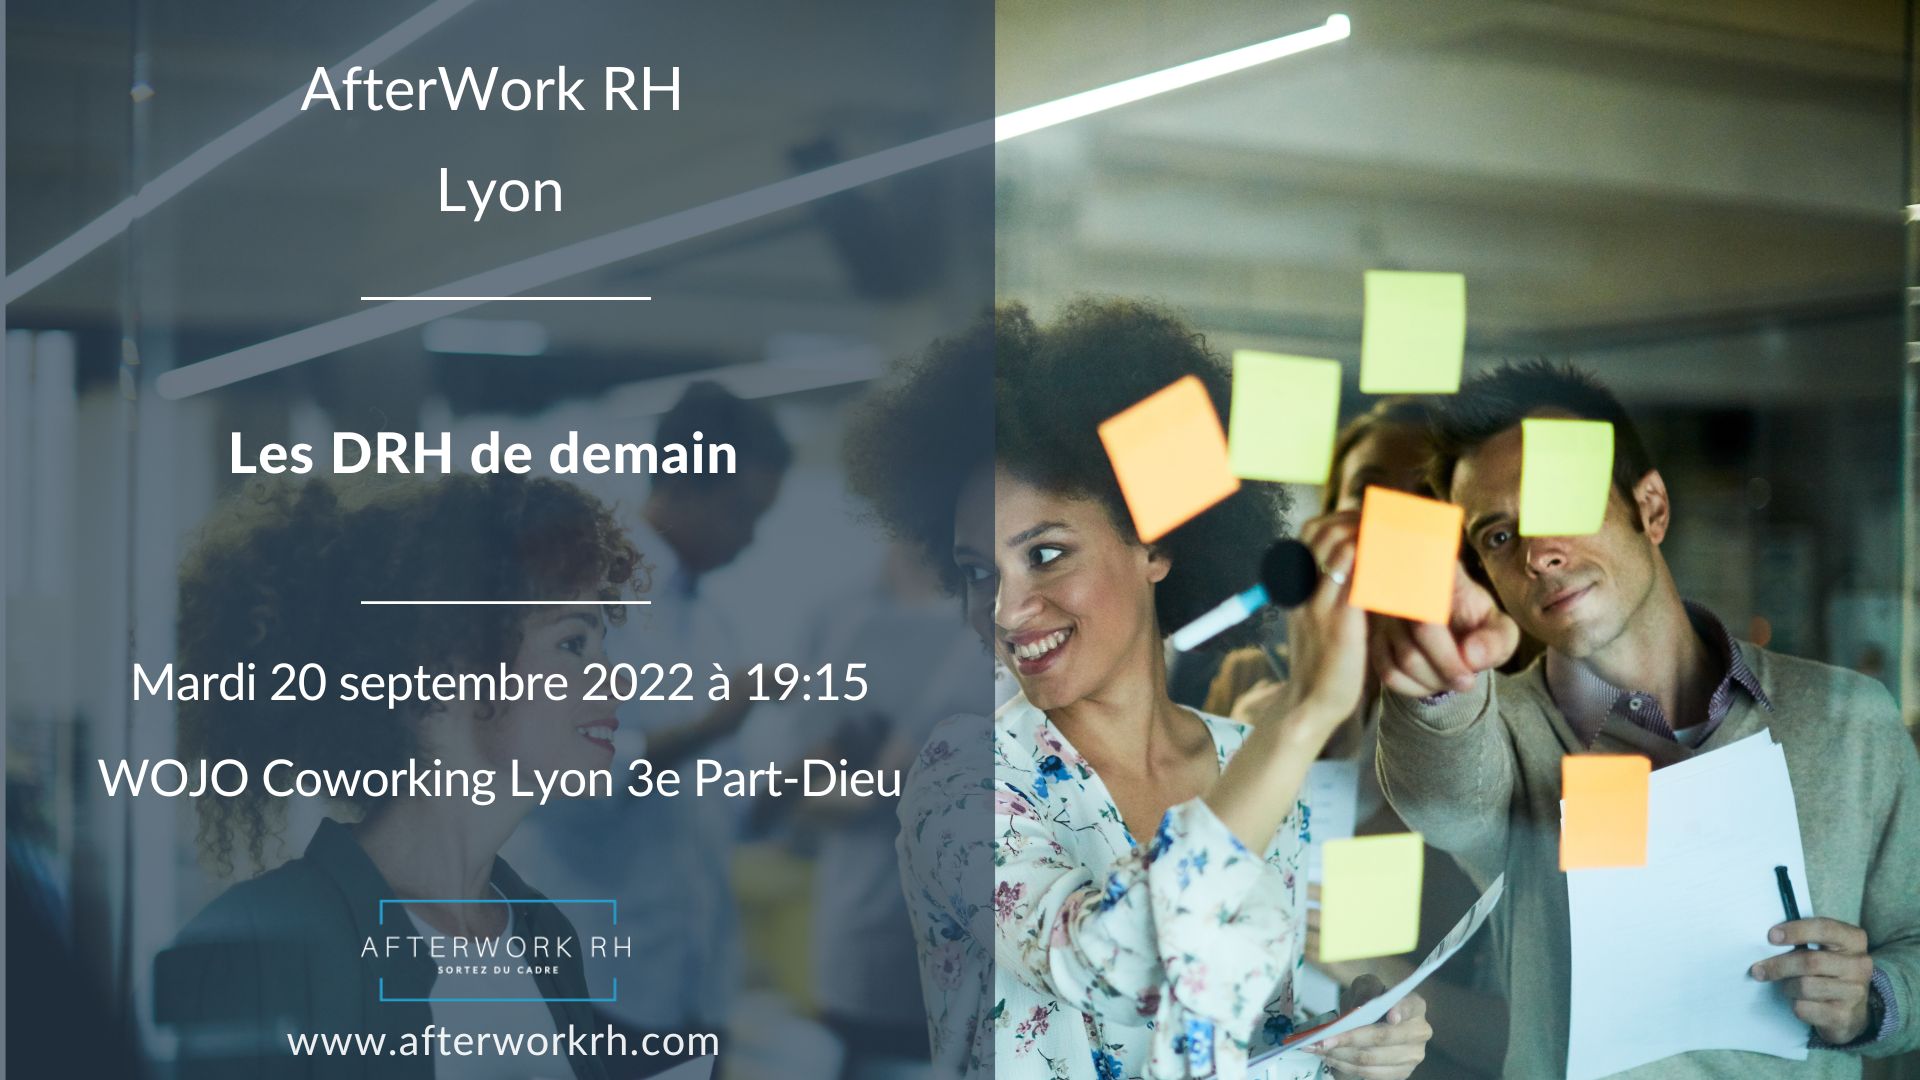 AfterWork RH Lyon - le drh de demain - AfterWork RH septembre 2022 Lyon